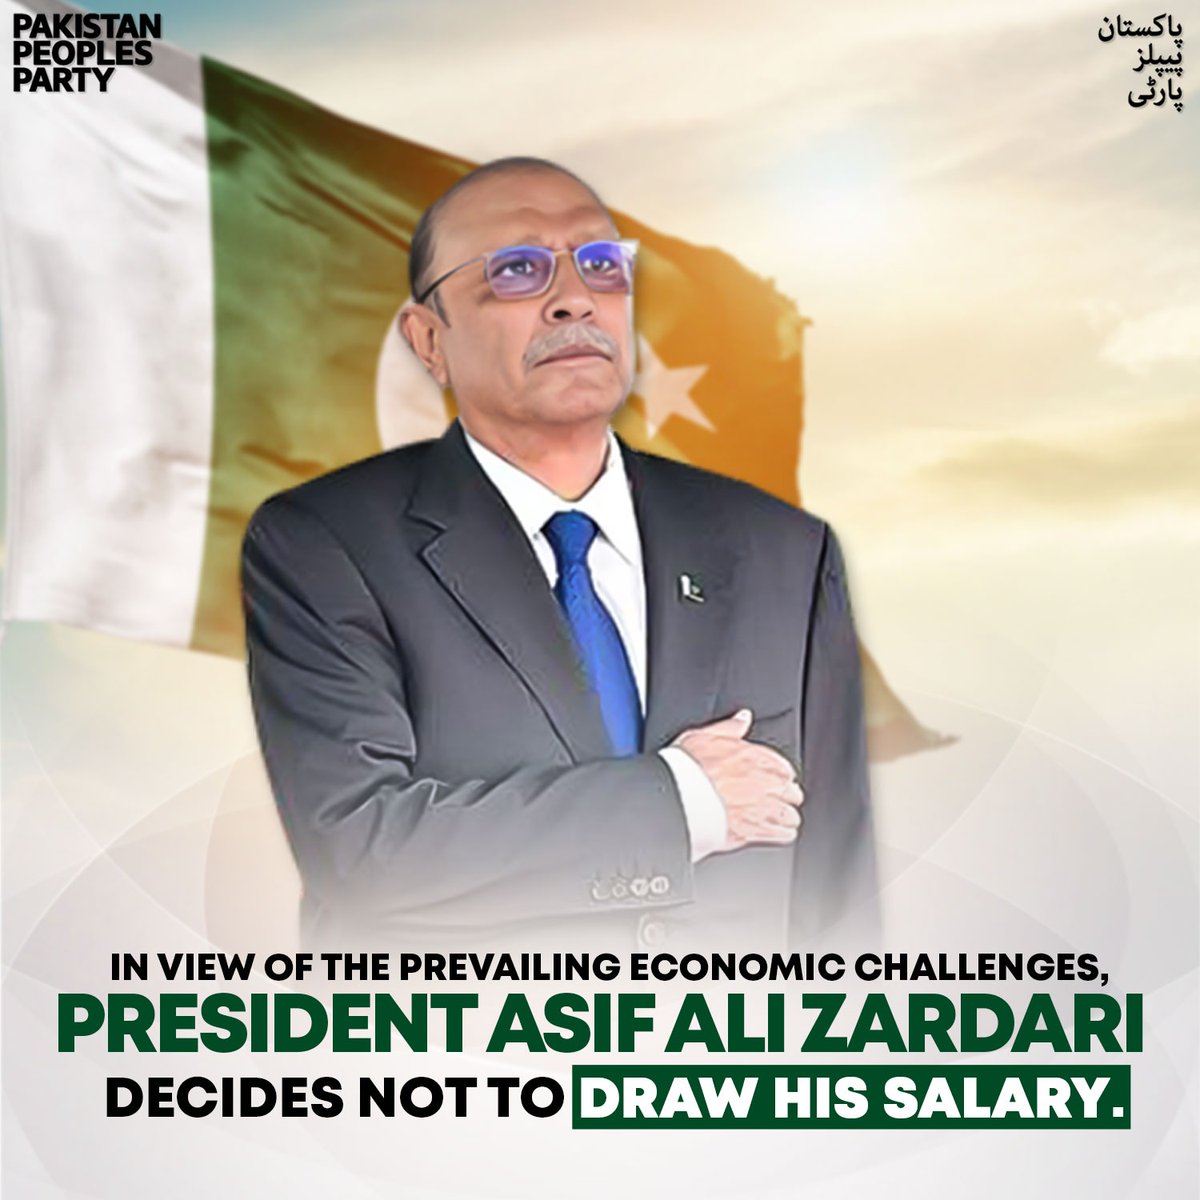 موجودہ معاشی چیلنجز کے پیش نظر صدر آصف علی زرداری نے اپنی تنخواہ نہ لینے کا فیصلہ۔
#PresidentAsifAliZardari